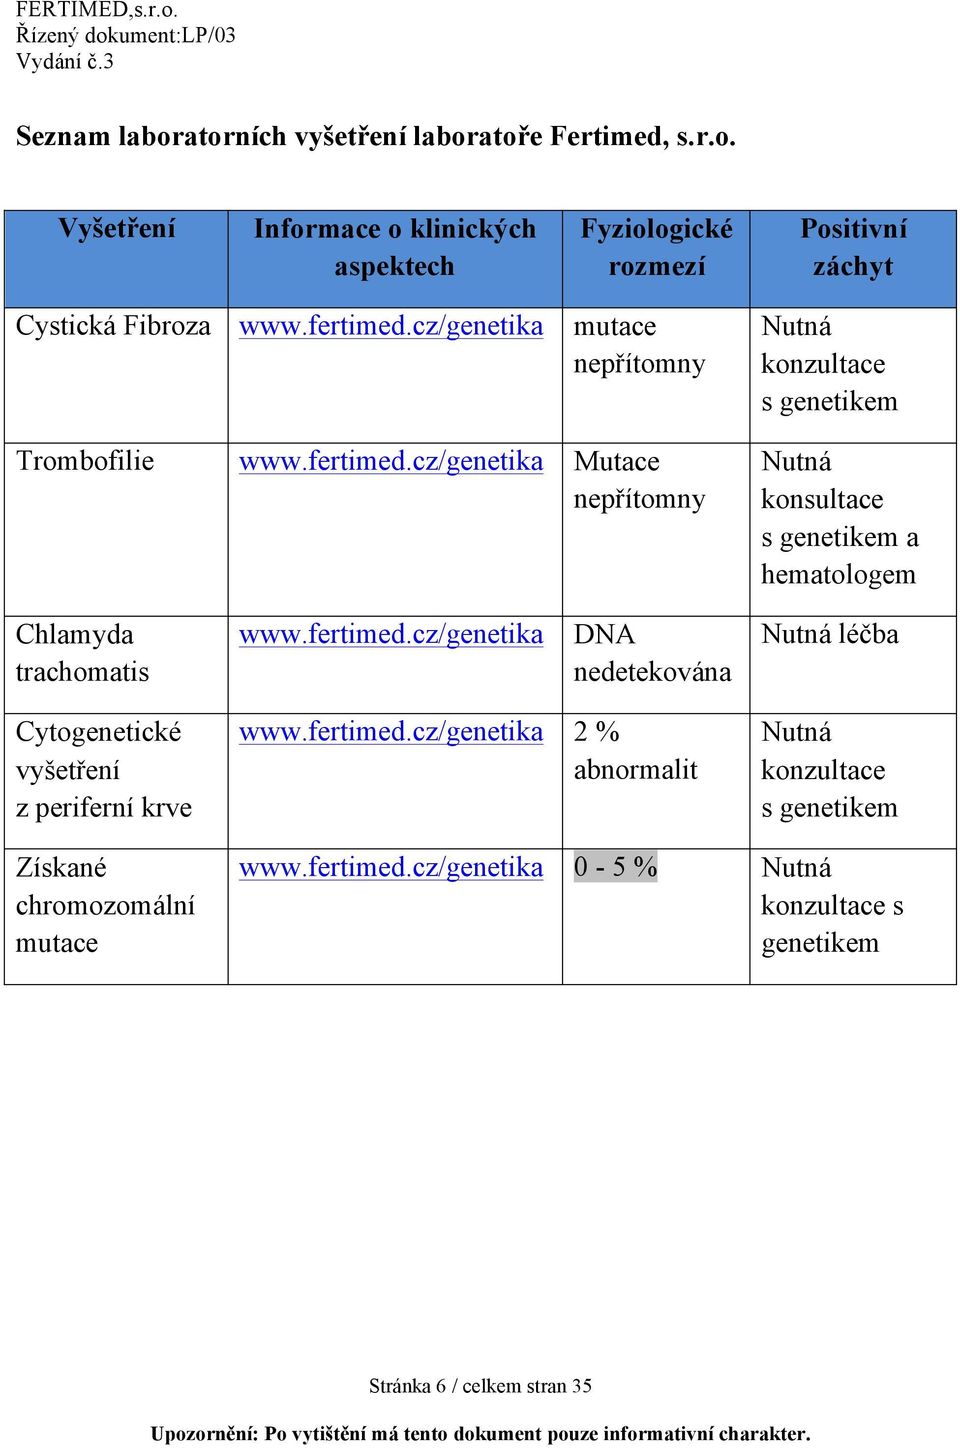 fertimed.cz/genetika DNA nedetekována Nutná léčba Cytogenetické vyšetření z periferní krve www.fertimed.cz/genetika 2 % abnormalit Nutná konzultace s genetikem Získané chromozomální mutace www.